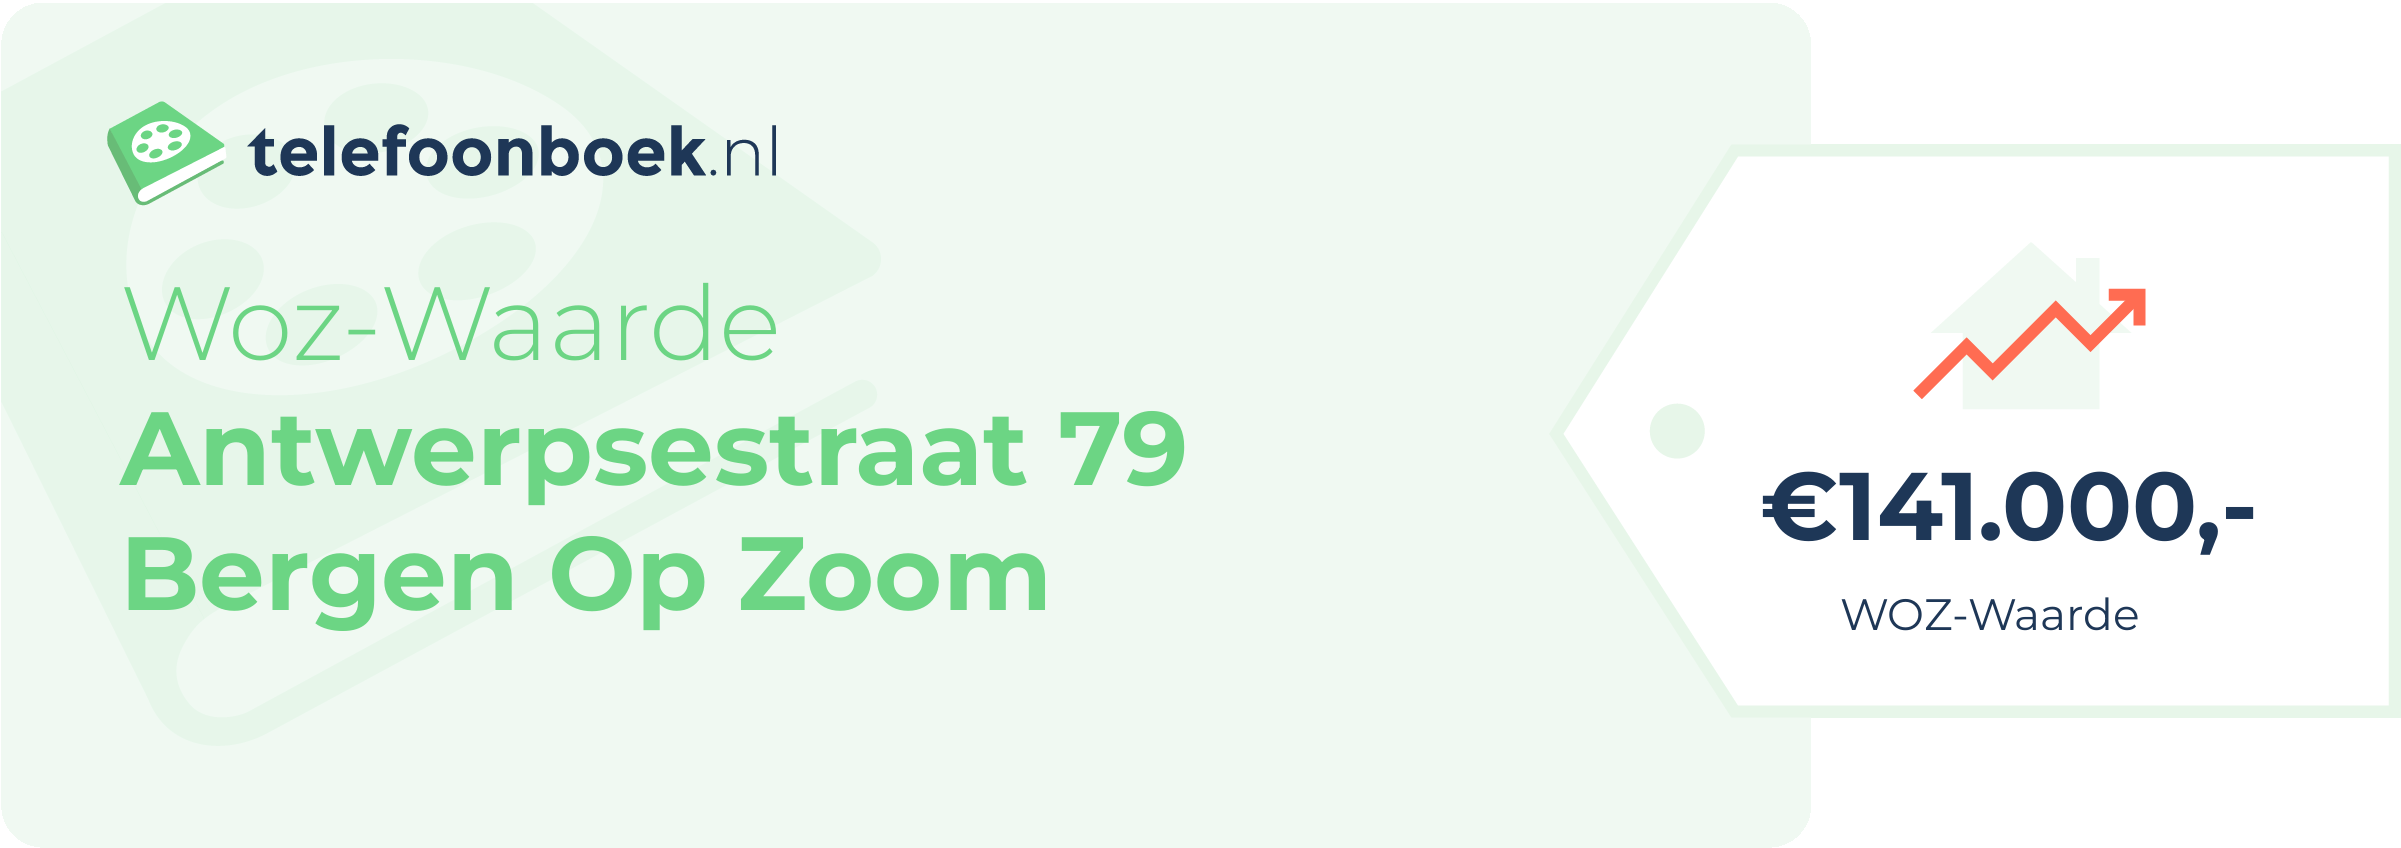 WOZ-waarde Antwerpsestraat 79 Bergen Op Zoom